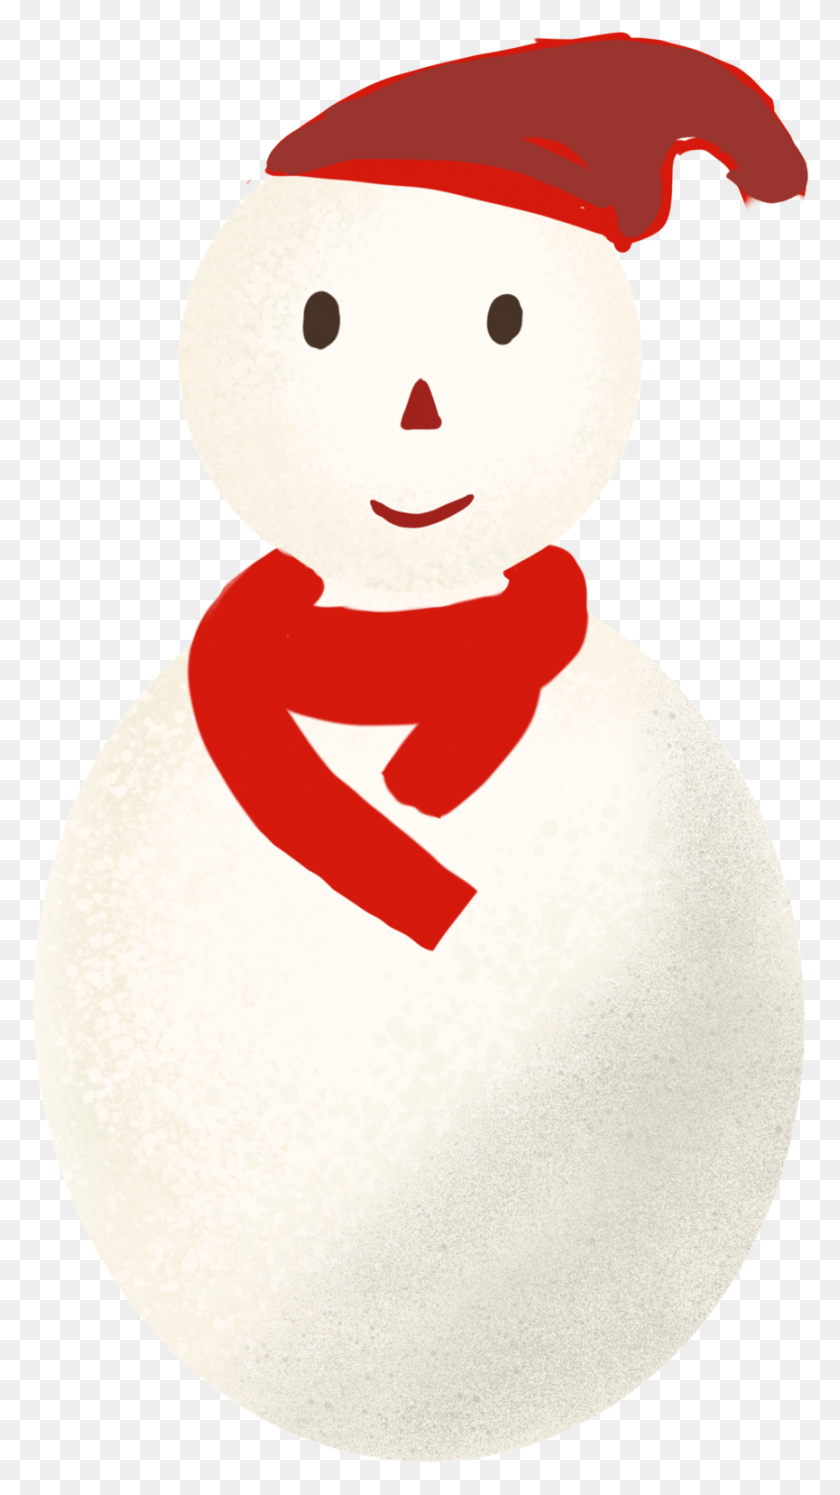 865x1592 Dibujado A Mano Simple Fresco De Nieve Y Christmas, Snowman, Winter, Snow HD PNG Download